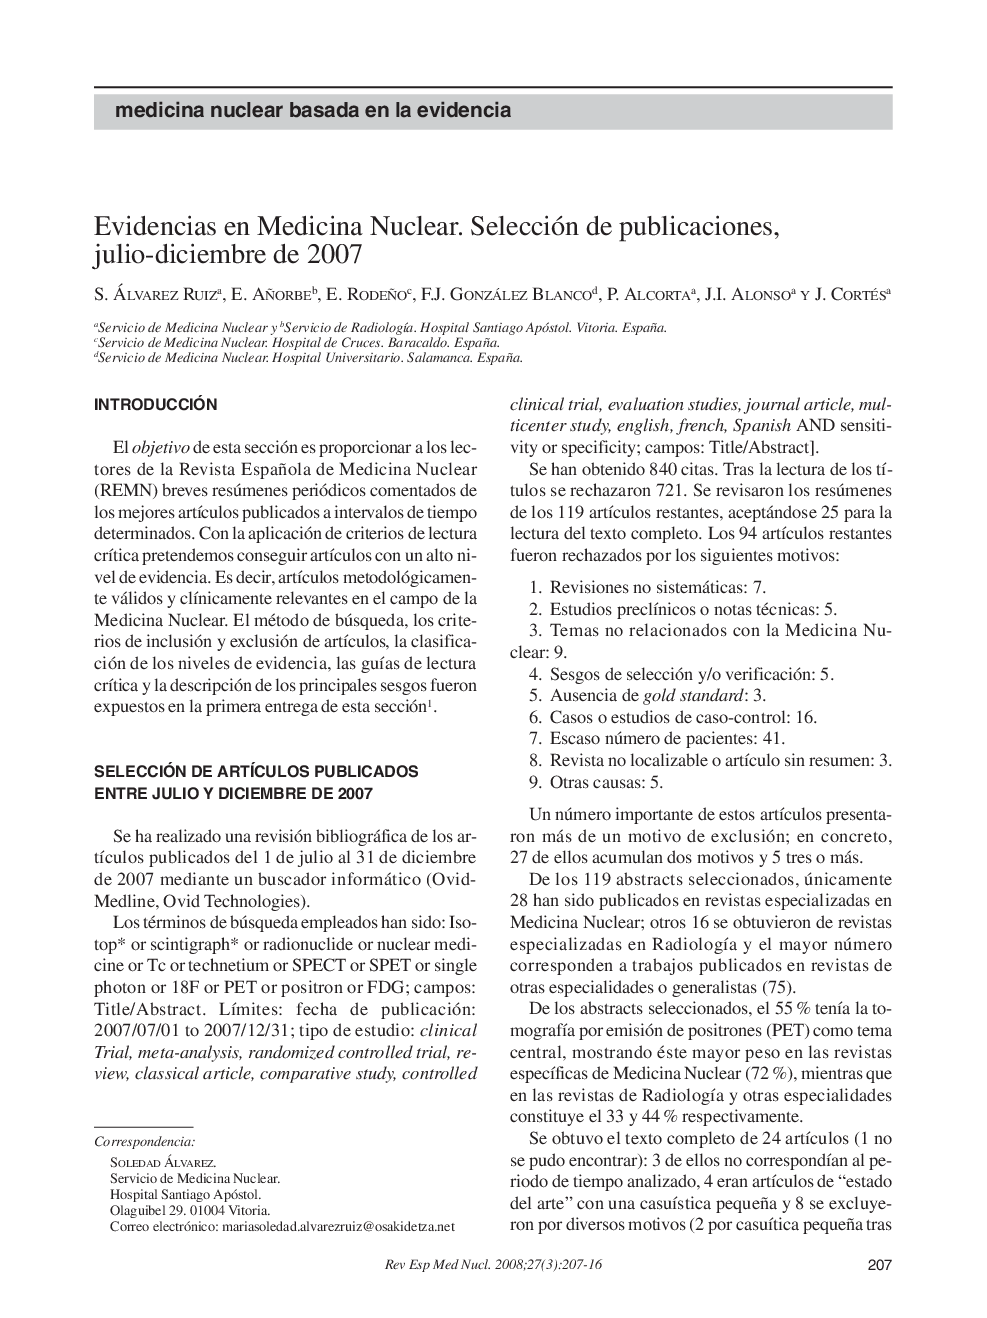 Evidencias en Medicina Nuclear. Selección de publicaciones, julio-diciembre de 2007